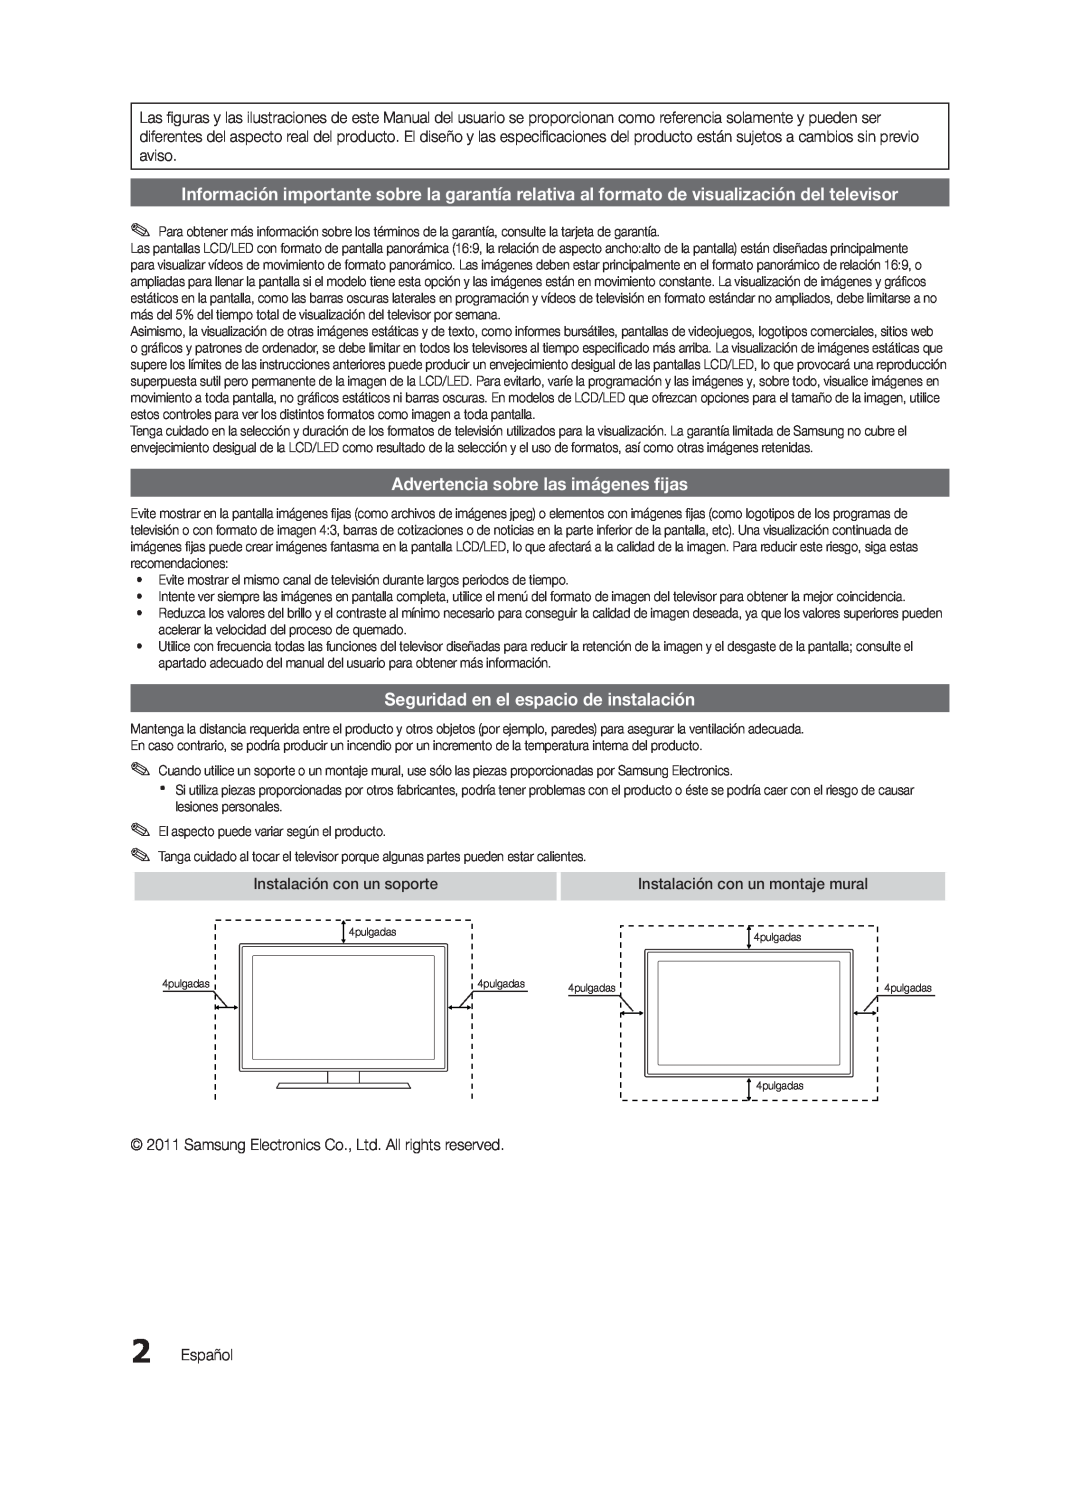 Samsung UN22D5003 Advertencia sobre las imágenes fijas, Seguridad en el espacio de instalación, Instalación con un soporte 